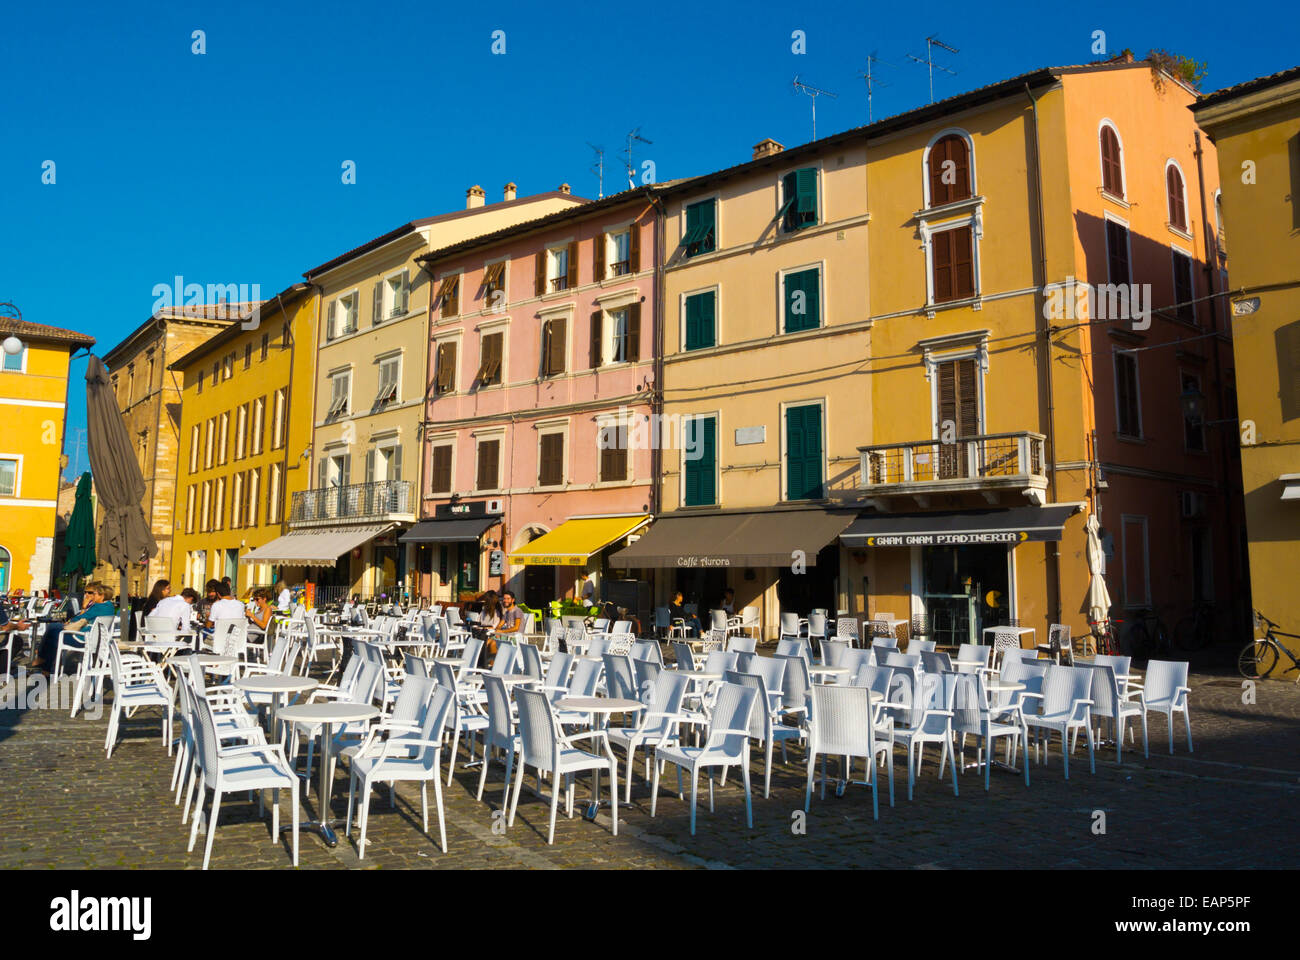 Piazza XX Settembre main square, Fano, Marche region, Italy Stock Photo -  Alamy